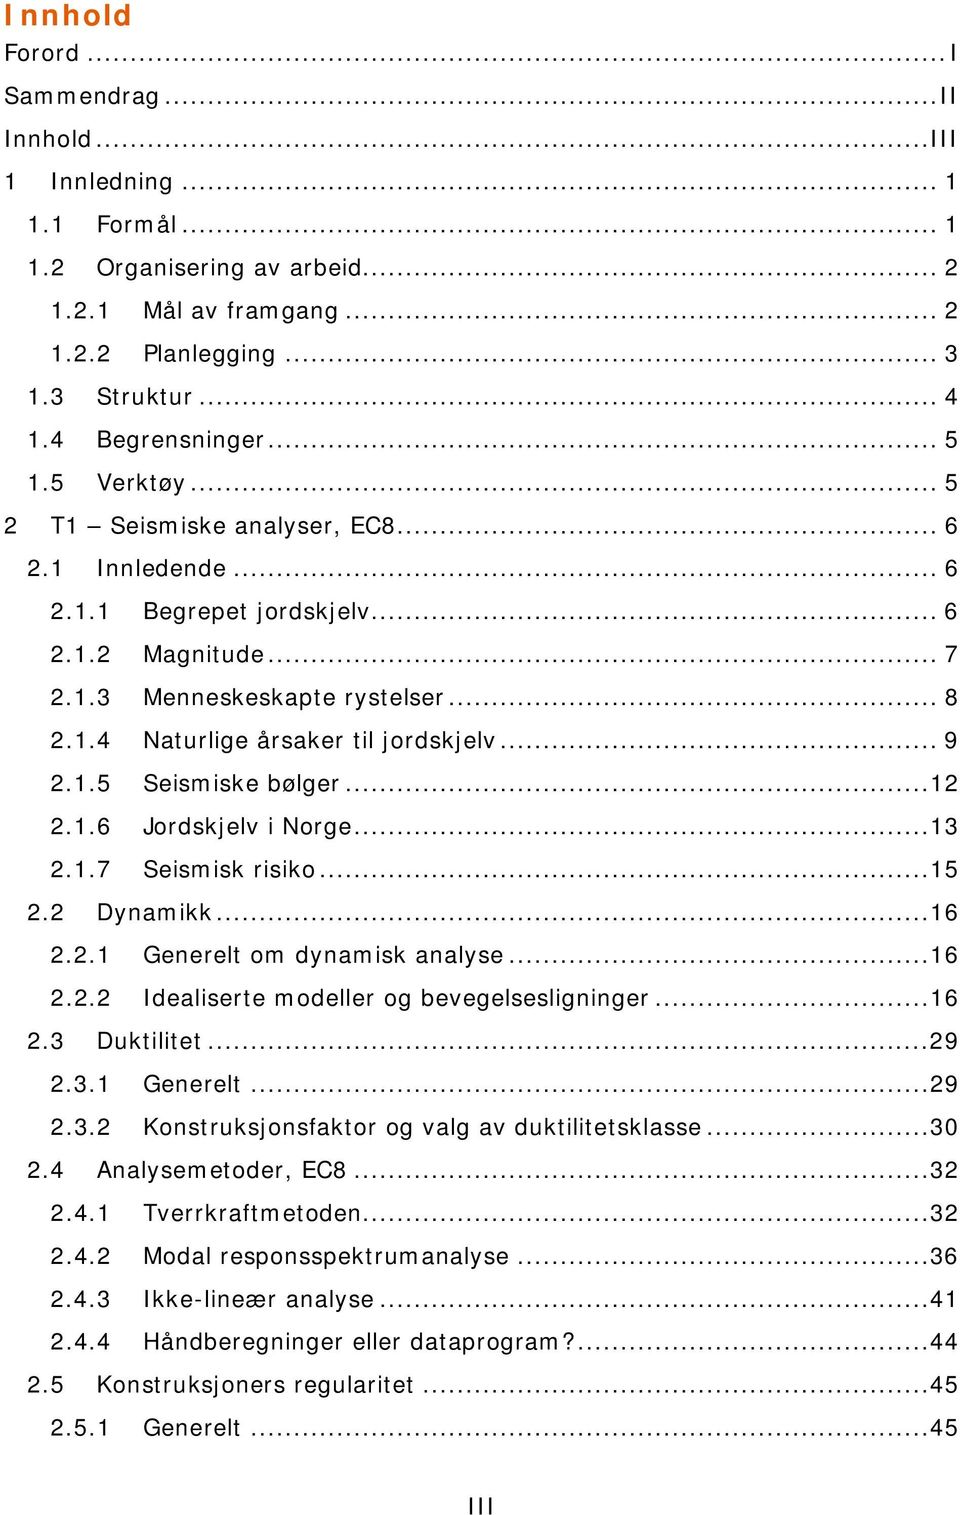 .. 9 2.1.5 Seismiske bølger...12 2.1.6 Jordskjelv i Norge...13 2.1.7 Seismisk risiko...15 2.2 Dynamikk...16 2.2.1 Generelt om dynamisk analyse...16 2.2.2 Idealiserte modeller og bevegelsesligninger.